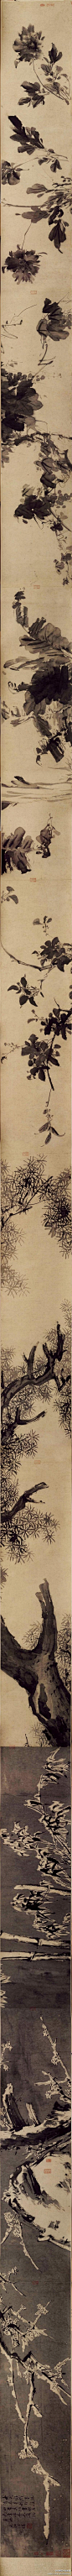 【 明 徐渭 《四时花卉图》 】卷，纸本，29.9×1081.7cm，北京故宫博物院藏。 作者分别以大写意手法绘牡丹、芍药、葡萄、芭蕉，以兼工带写的手法绘桂花与苍松，以烘托法描绘雪中的竹、石、梅花，技法灵活多样，笔墨酣畅，不拘泥于形，旨在追求神韵。从卷尾自识看，画家是借物抒发胸中的抑郁。